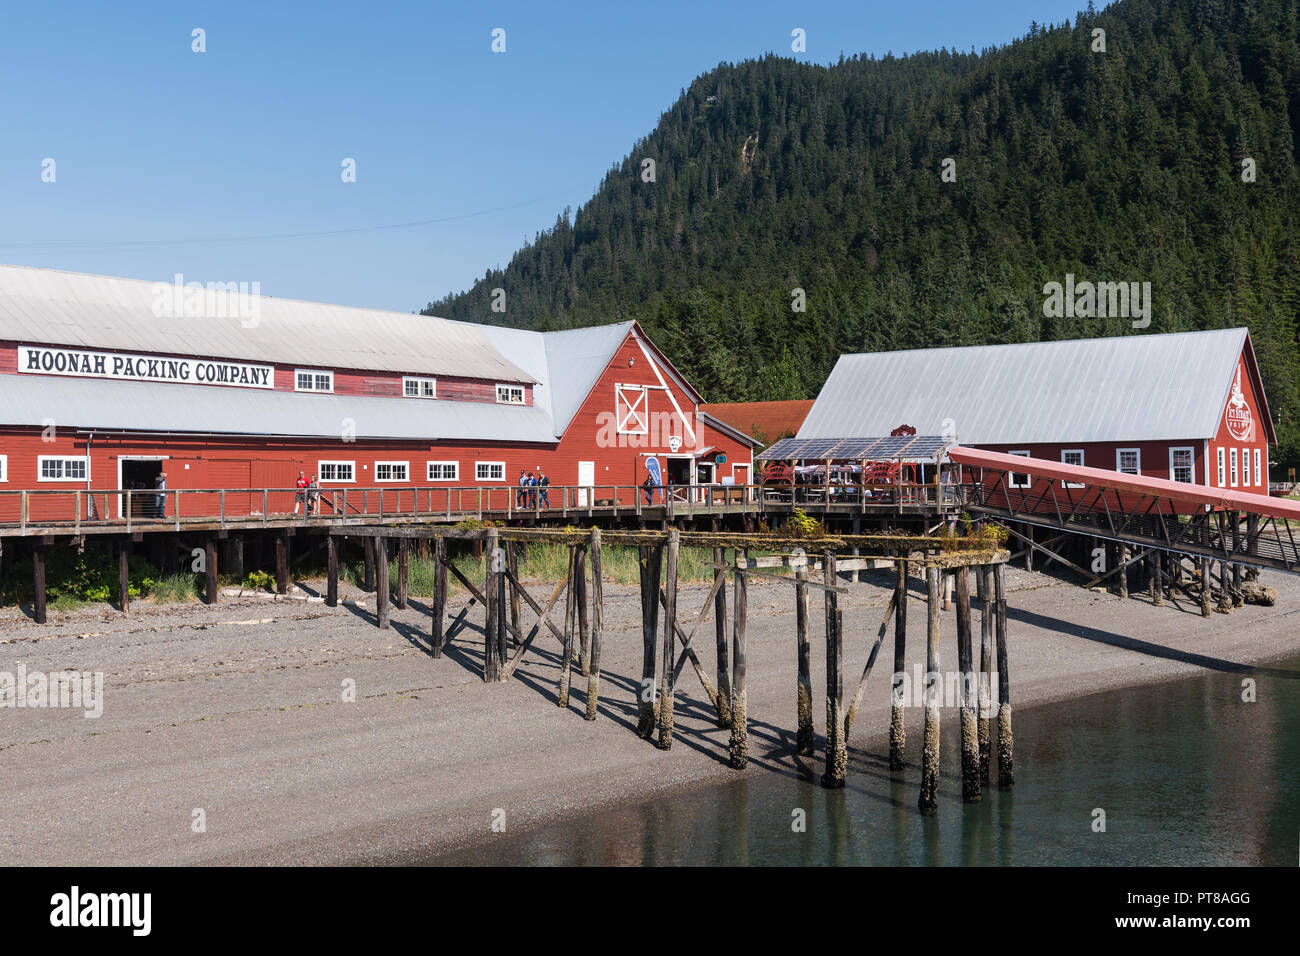 Le bâtiment de l'ancienne Hoonah packing company et musée, , Hoonah, Alaska Banque D'Images